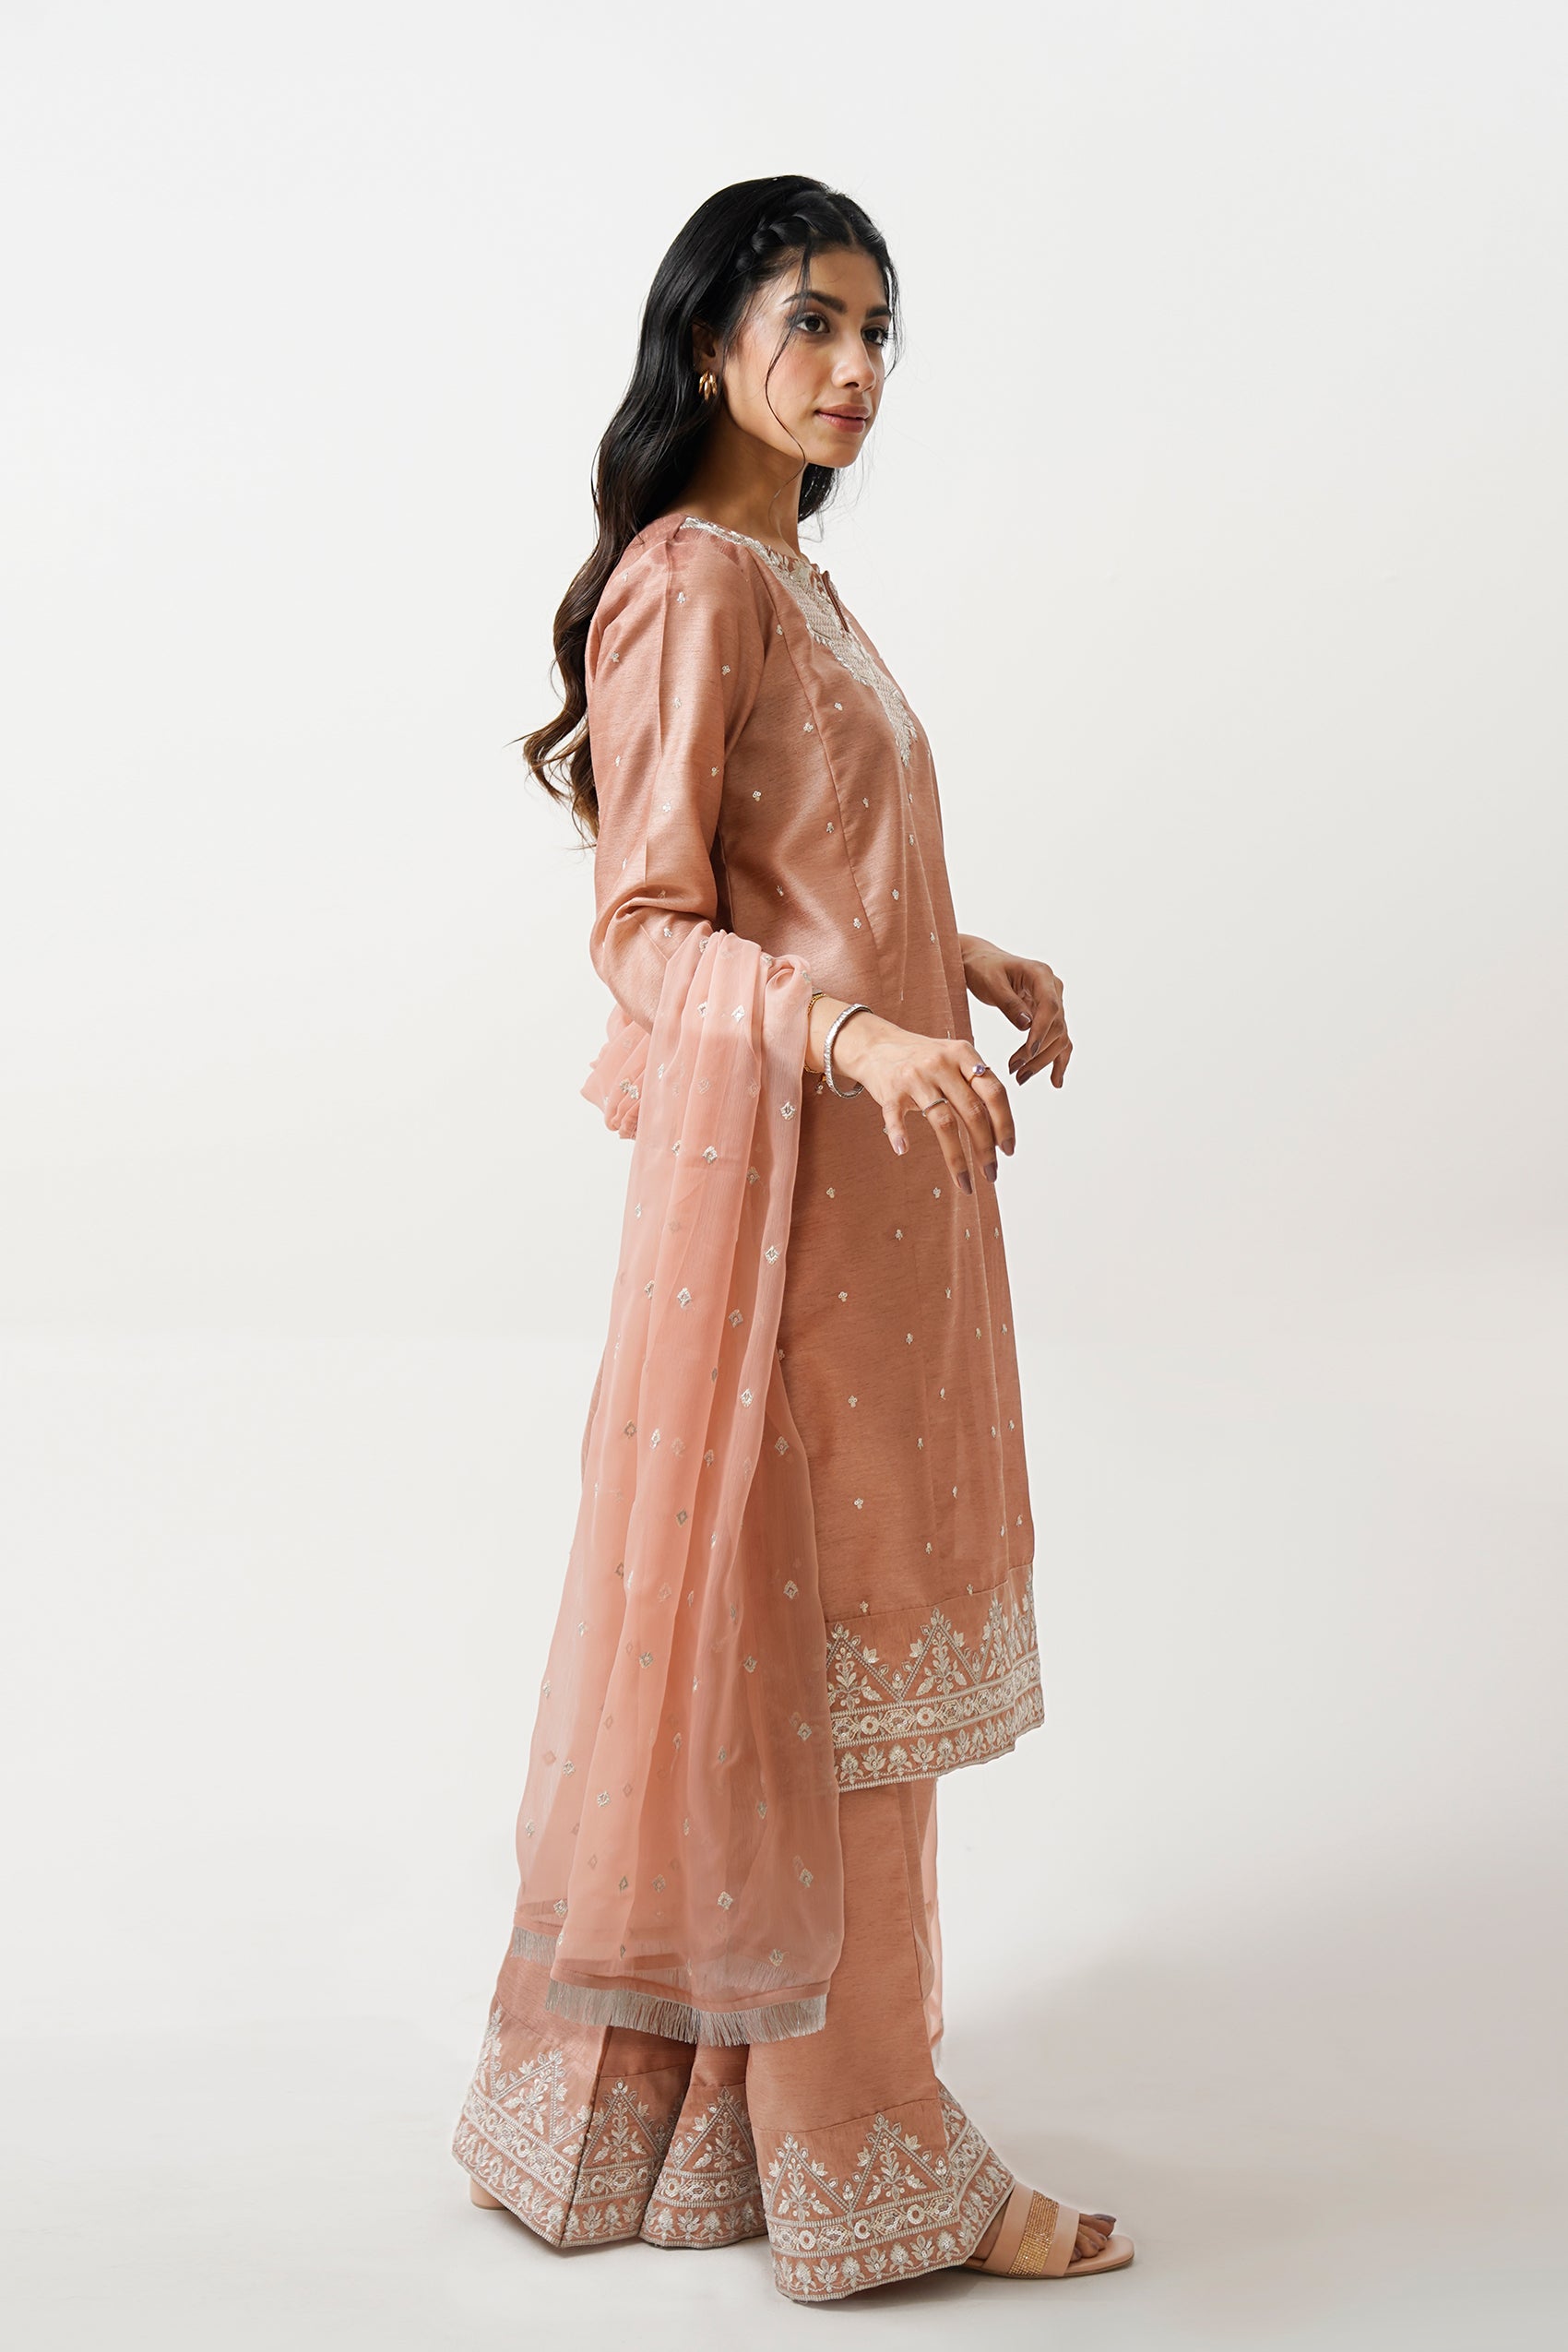 online dress shopping in pakistan